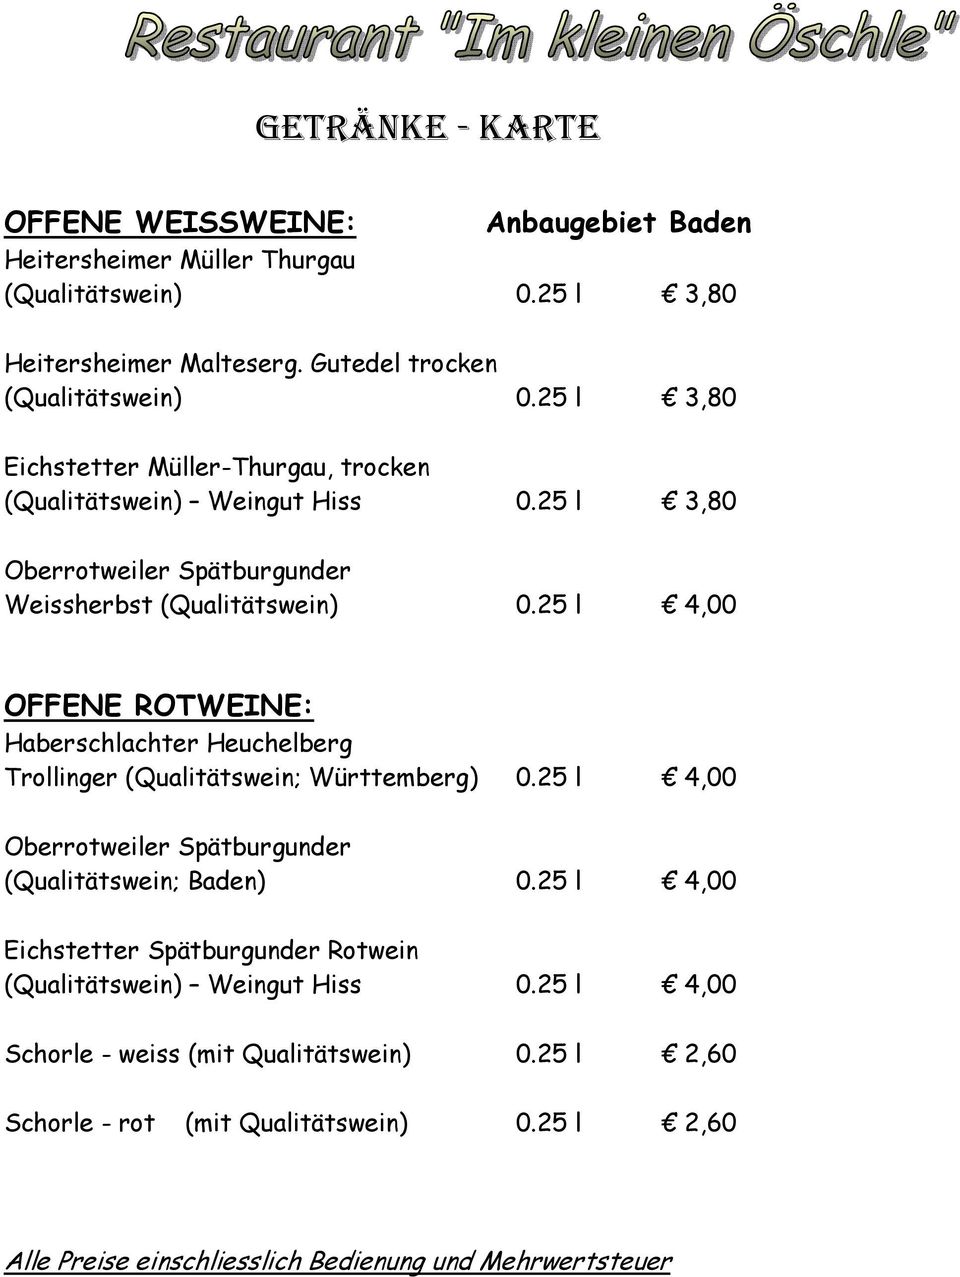 25 l 4,00 OFFENE ROTWEINE: Haberschlachter Heuchelberg Trollinger (Qualitätswein; Württemberg) 0.25 l 4,00 Oberrotweiler Spätburgunder (Qualitätswein; Baden) 0.